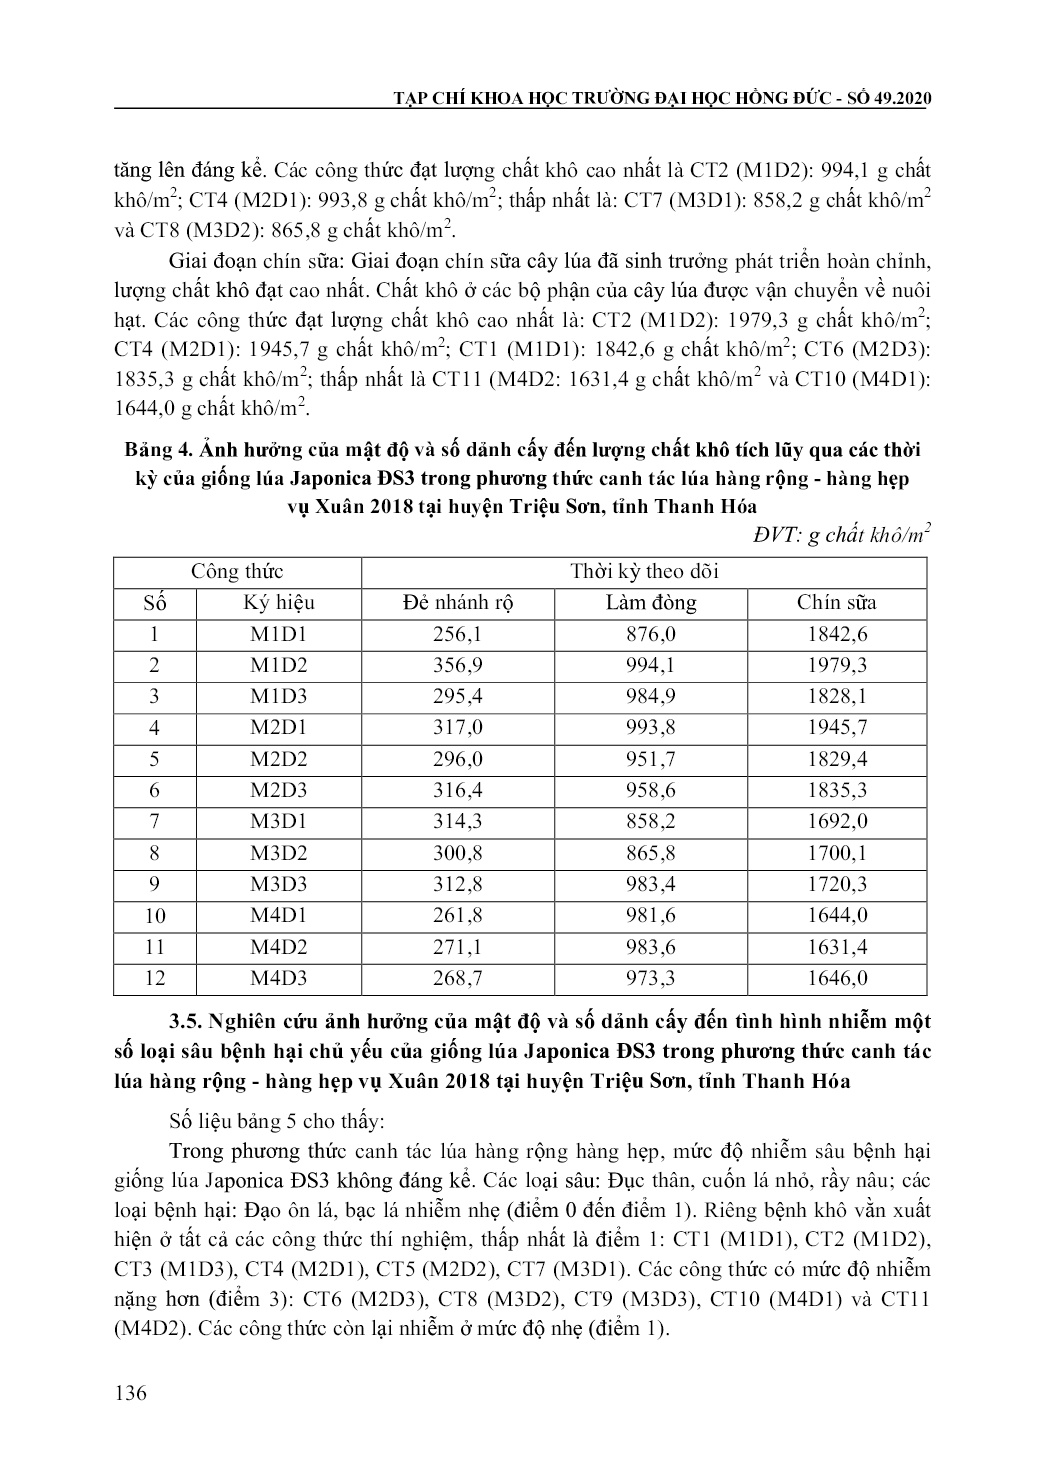 Kết quả nghiên cứu ảnh hưởng của mật độ và số dảnh cấy đến năng suất giống lúa Japonica ĐS3 trong phương thức canh tác hàng rộng - Hàng hẹp vụ xuân 2018 tại huyện Triệu Sơn, tỉnh Thanh Hóa trang 6